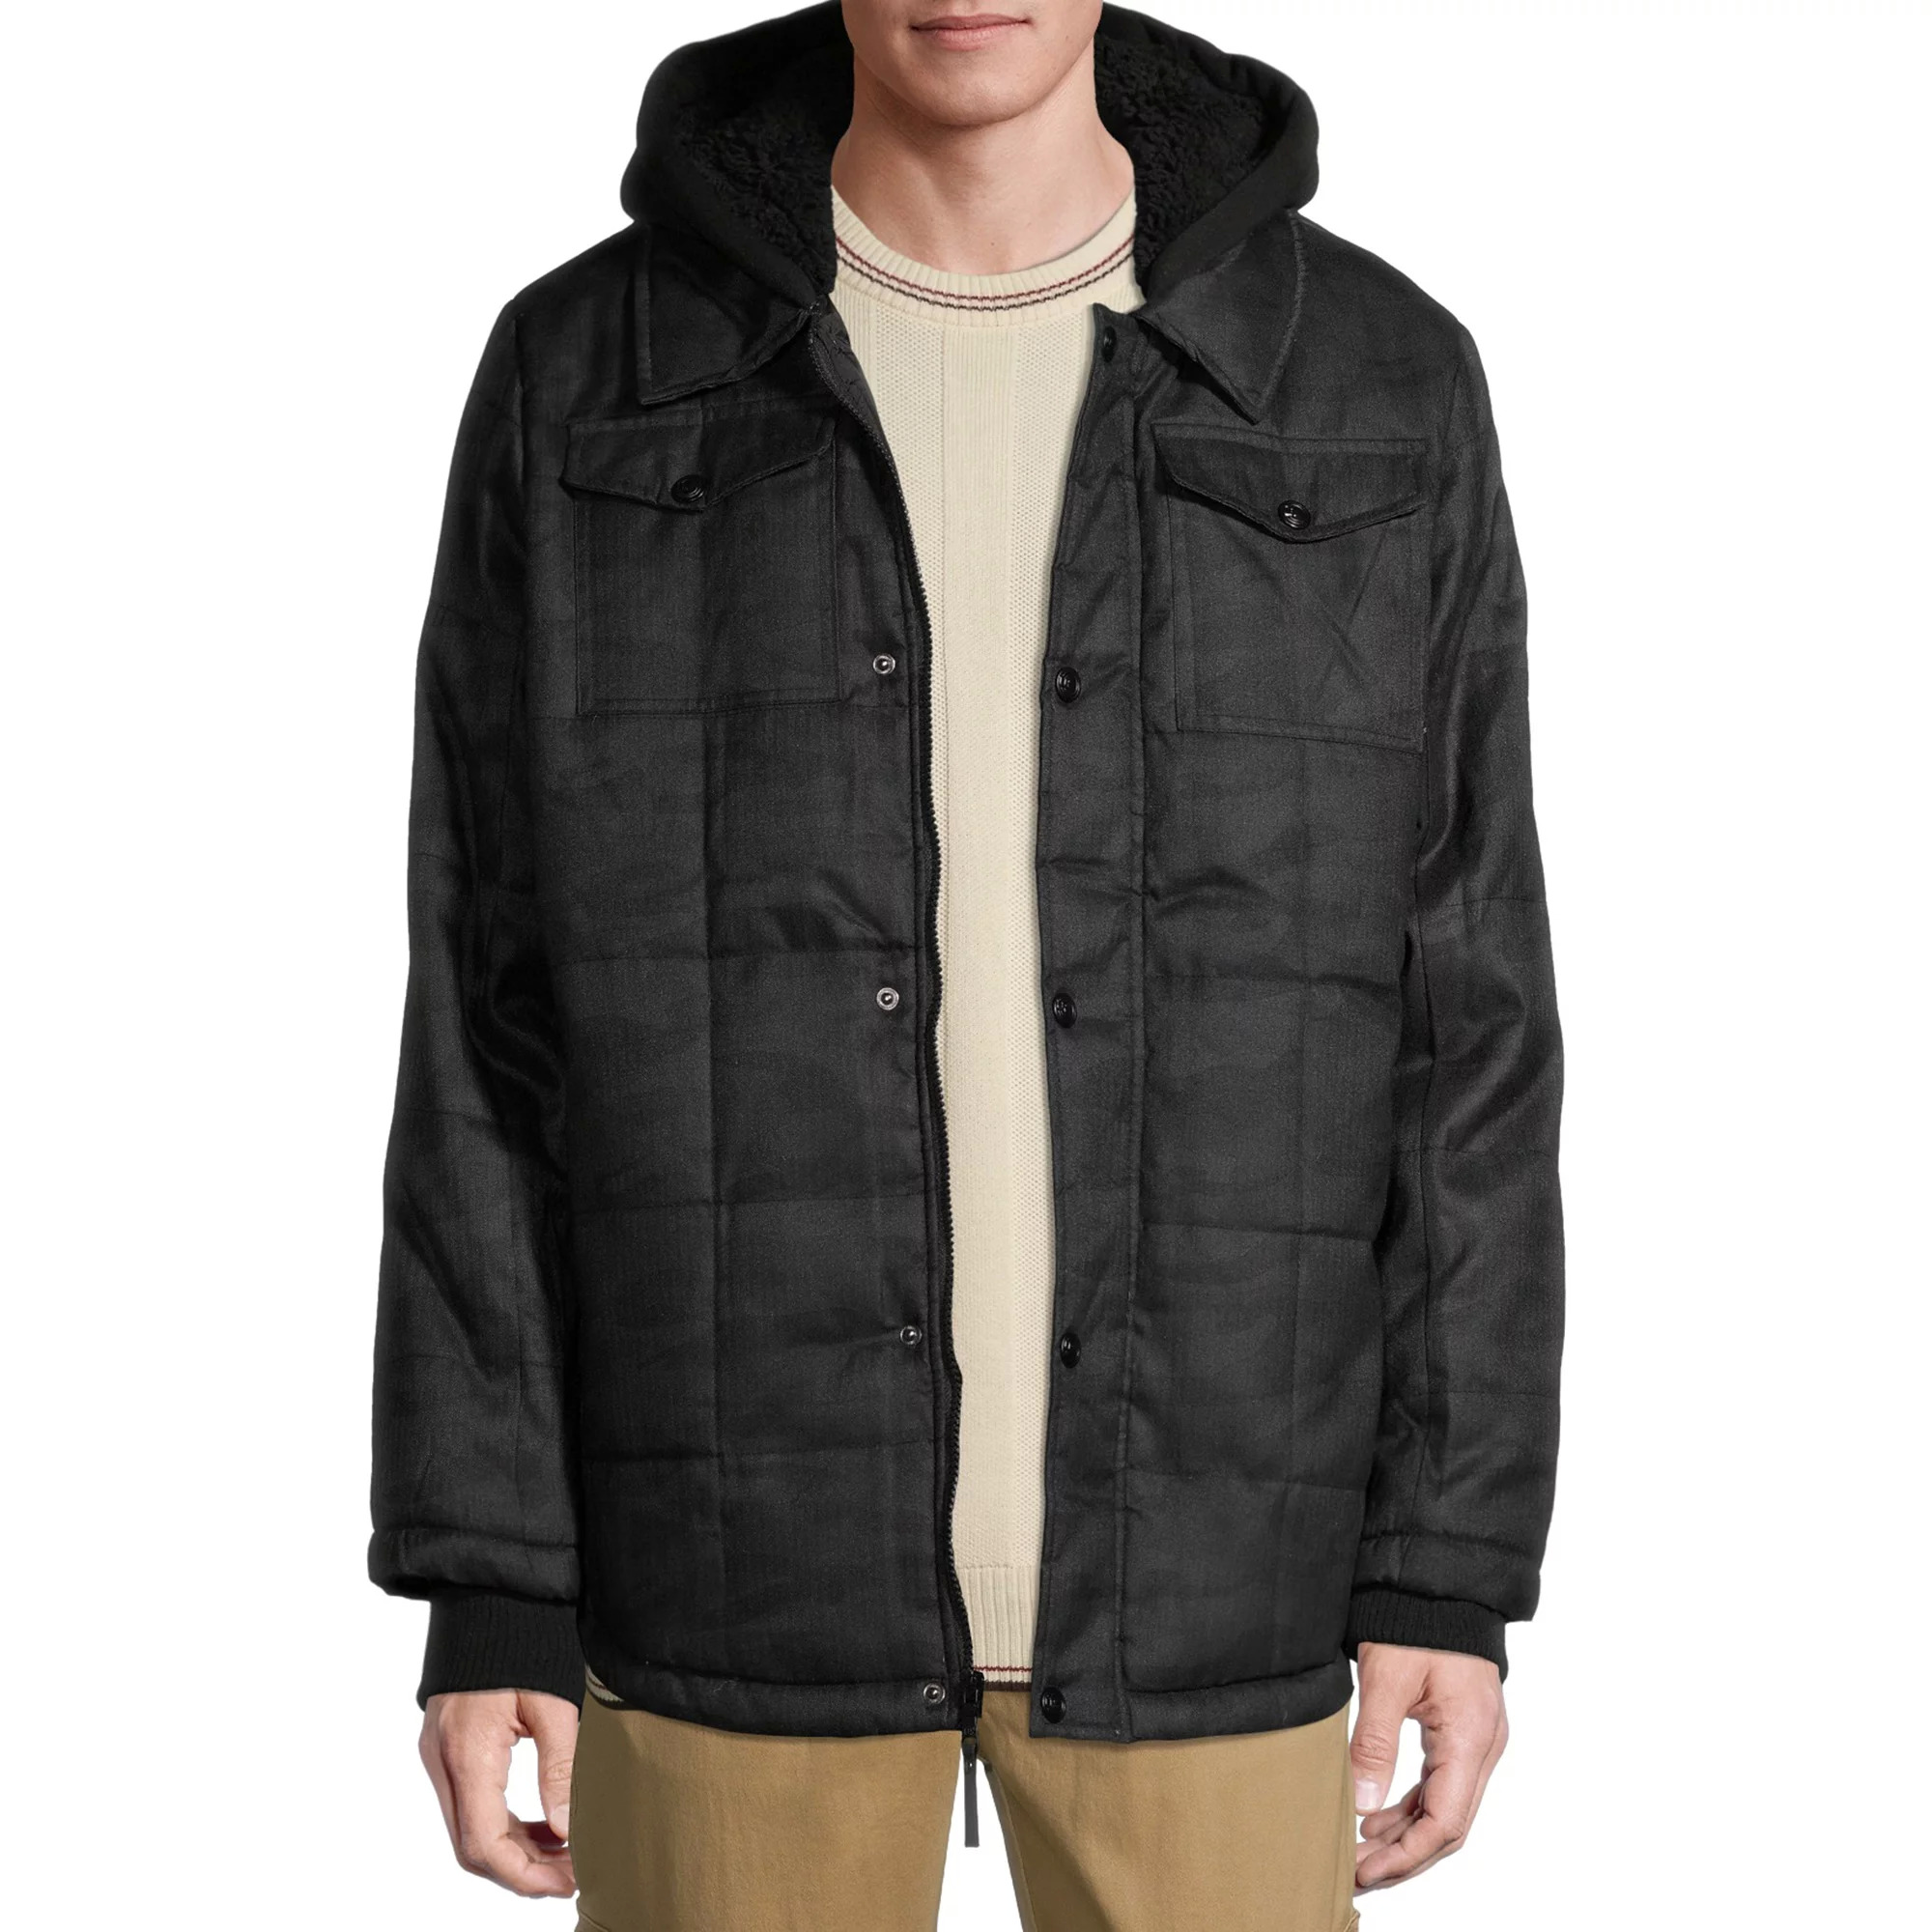 Urban Republic Men's Light Wool Jacket w/ Fleece Hood (Black Camo, Size Medium Only) $9.95 + Free S&H w/ Walmart+ or $35+